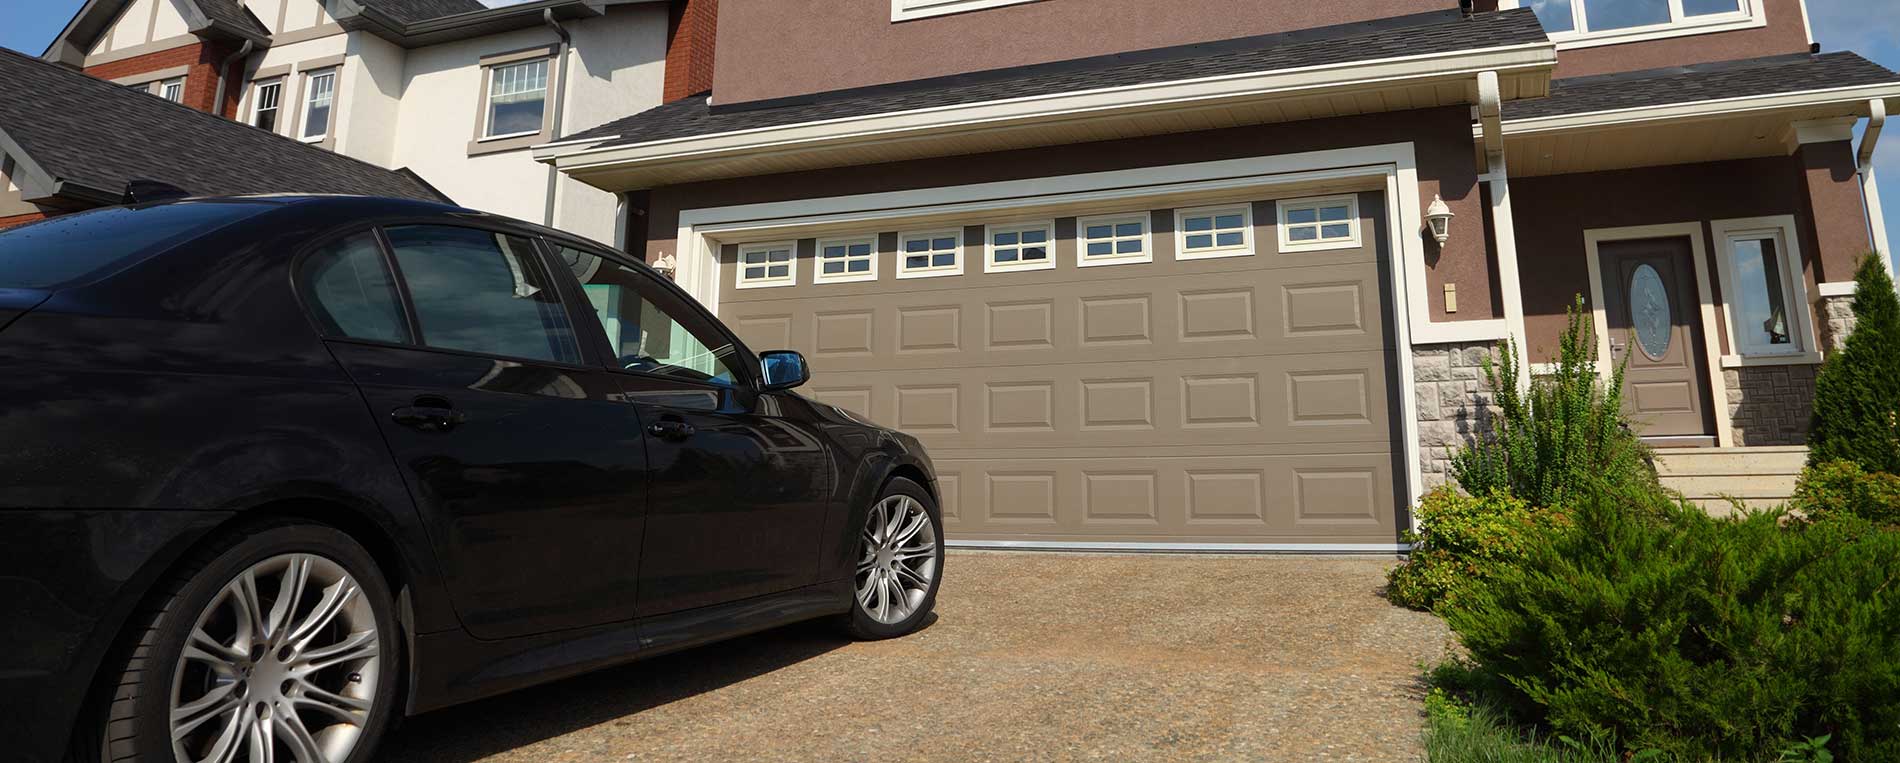 How to Troubleshoot Garage Door Openers